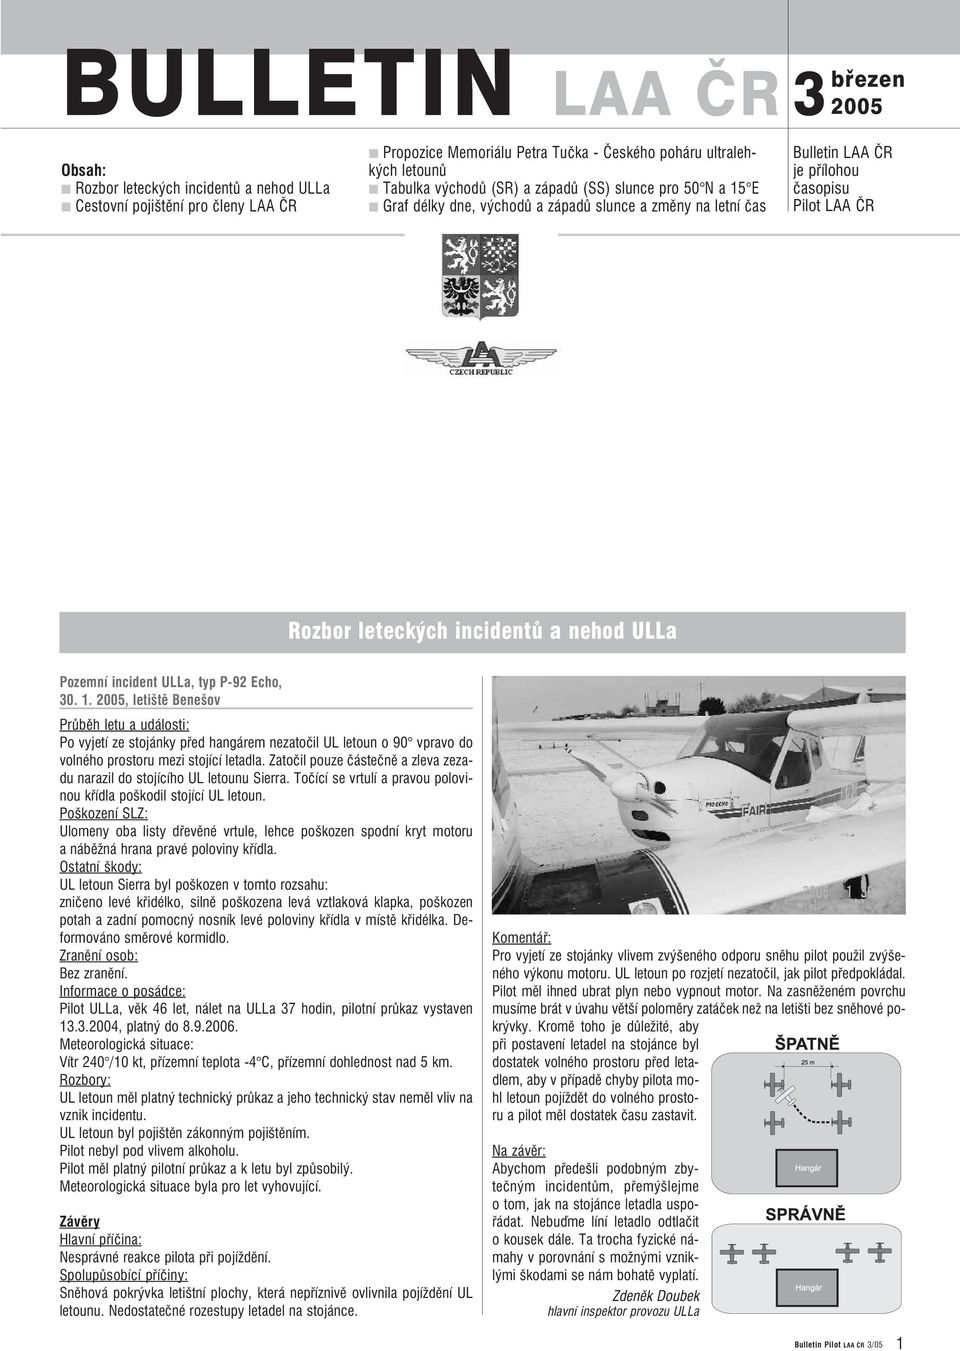 Pozemní incident ULLa, typ P 92 Echo, 30. 1. 2005, letiště Benešov Průběh letu a události: Po vyjetí ze stojánky před hangárem nezatočil UL letoun o 90 vpravo do volného prostoru mezi stojící letadla.